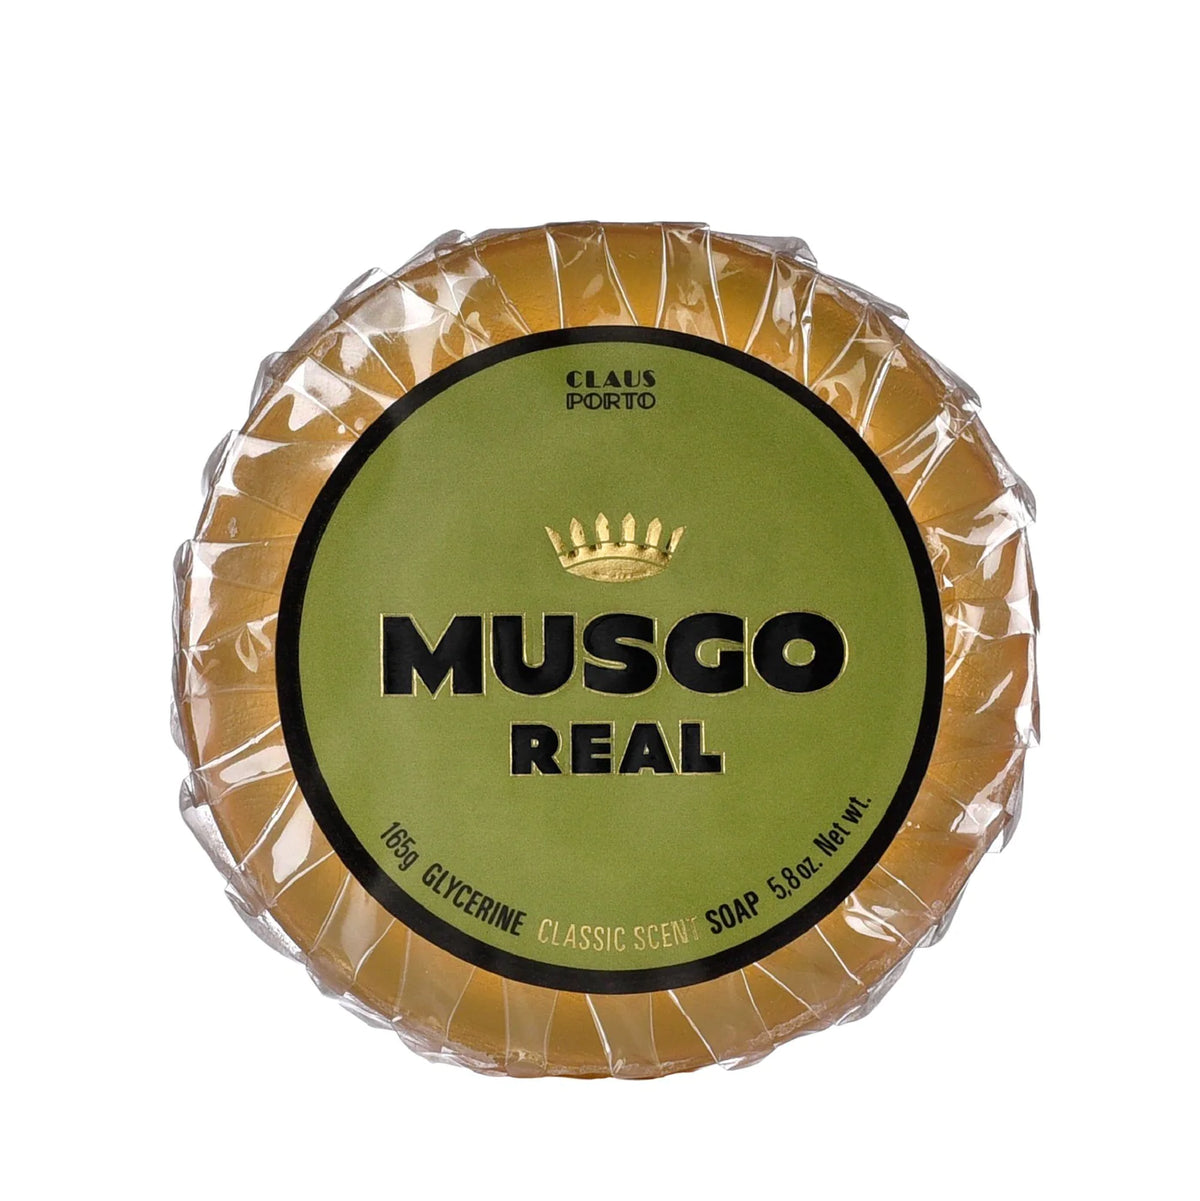 Claus Porto Musgo Real Classic Scent Glycerin Pre-Shave Soap